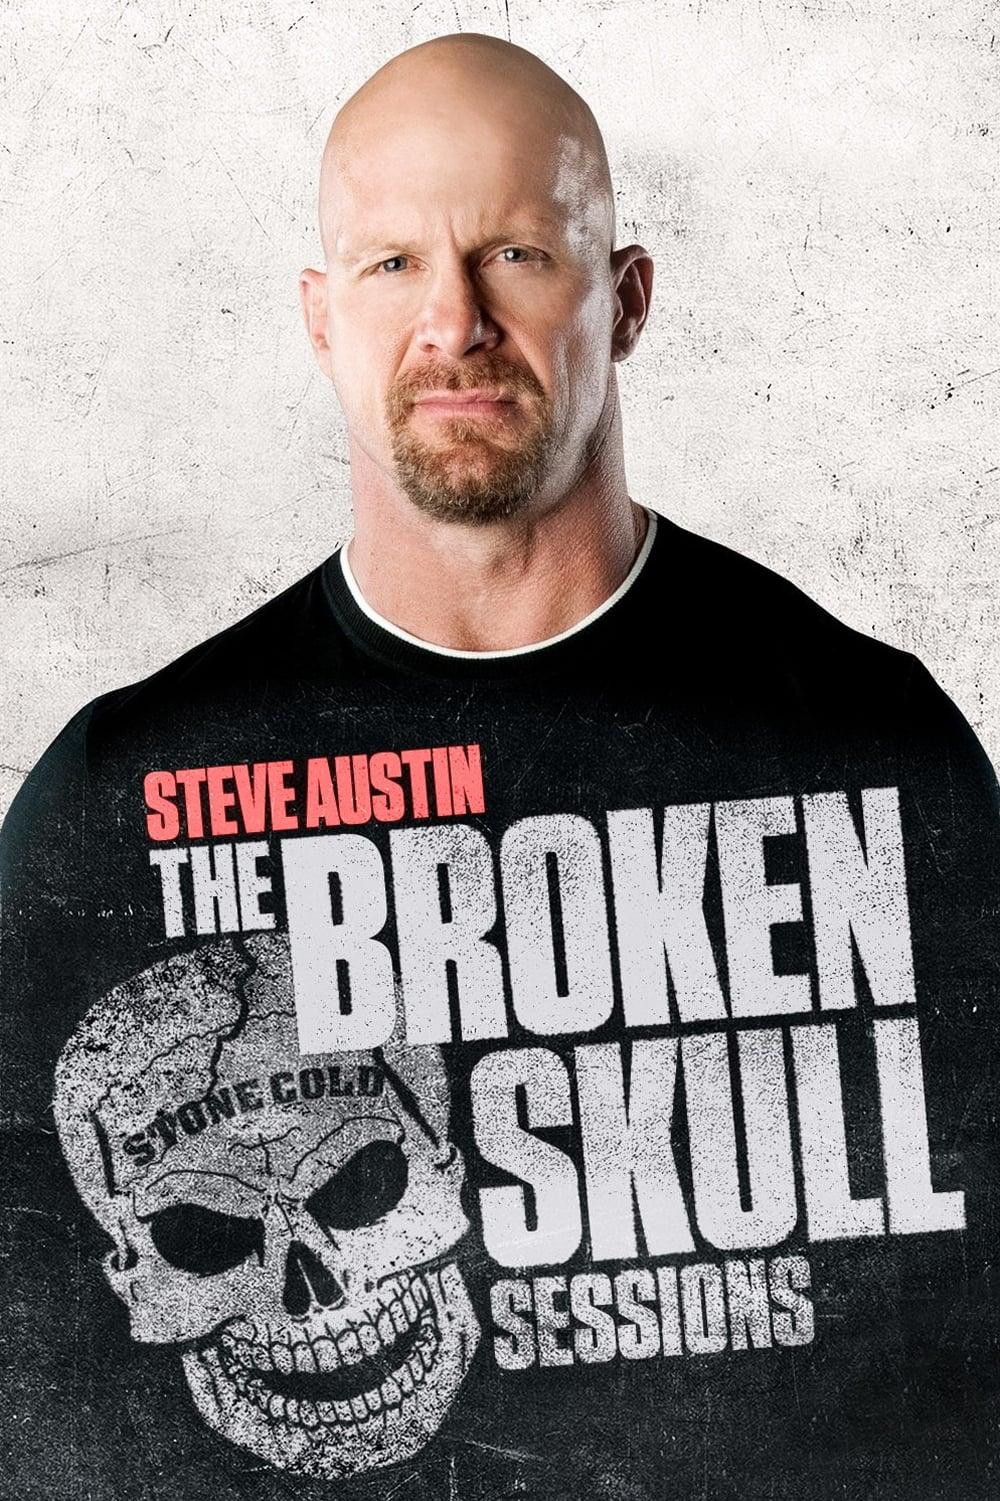 Steve Austin's Broken Skull Sessions poster